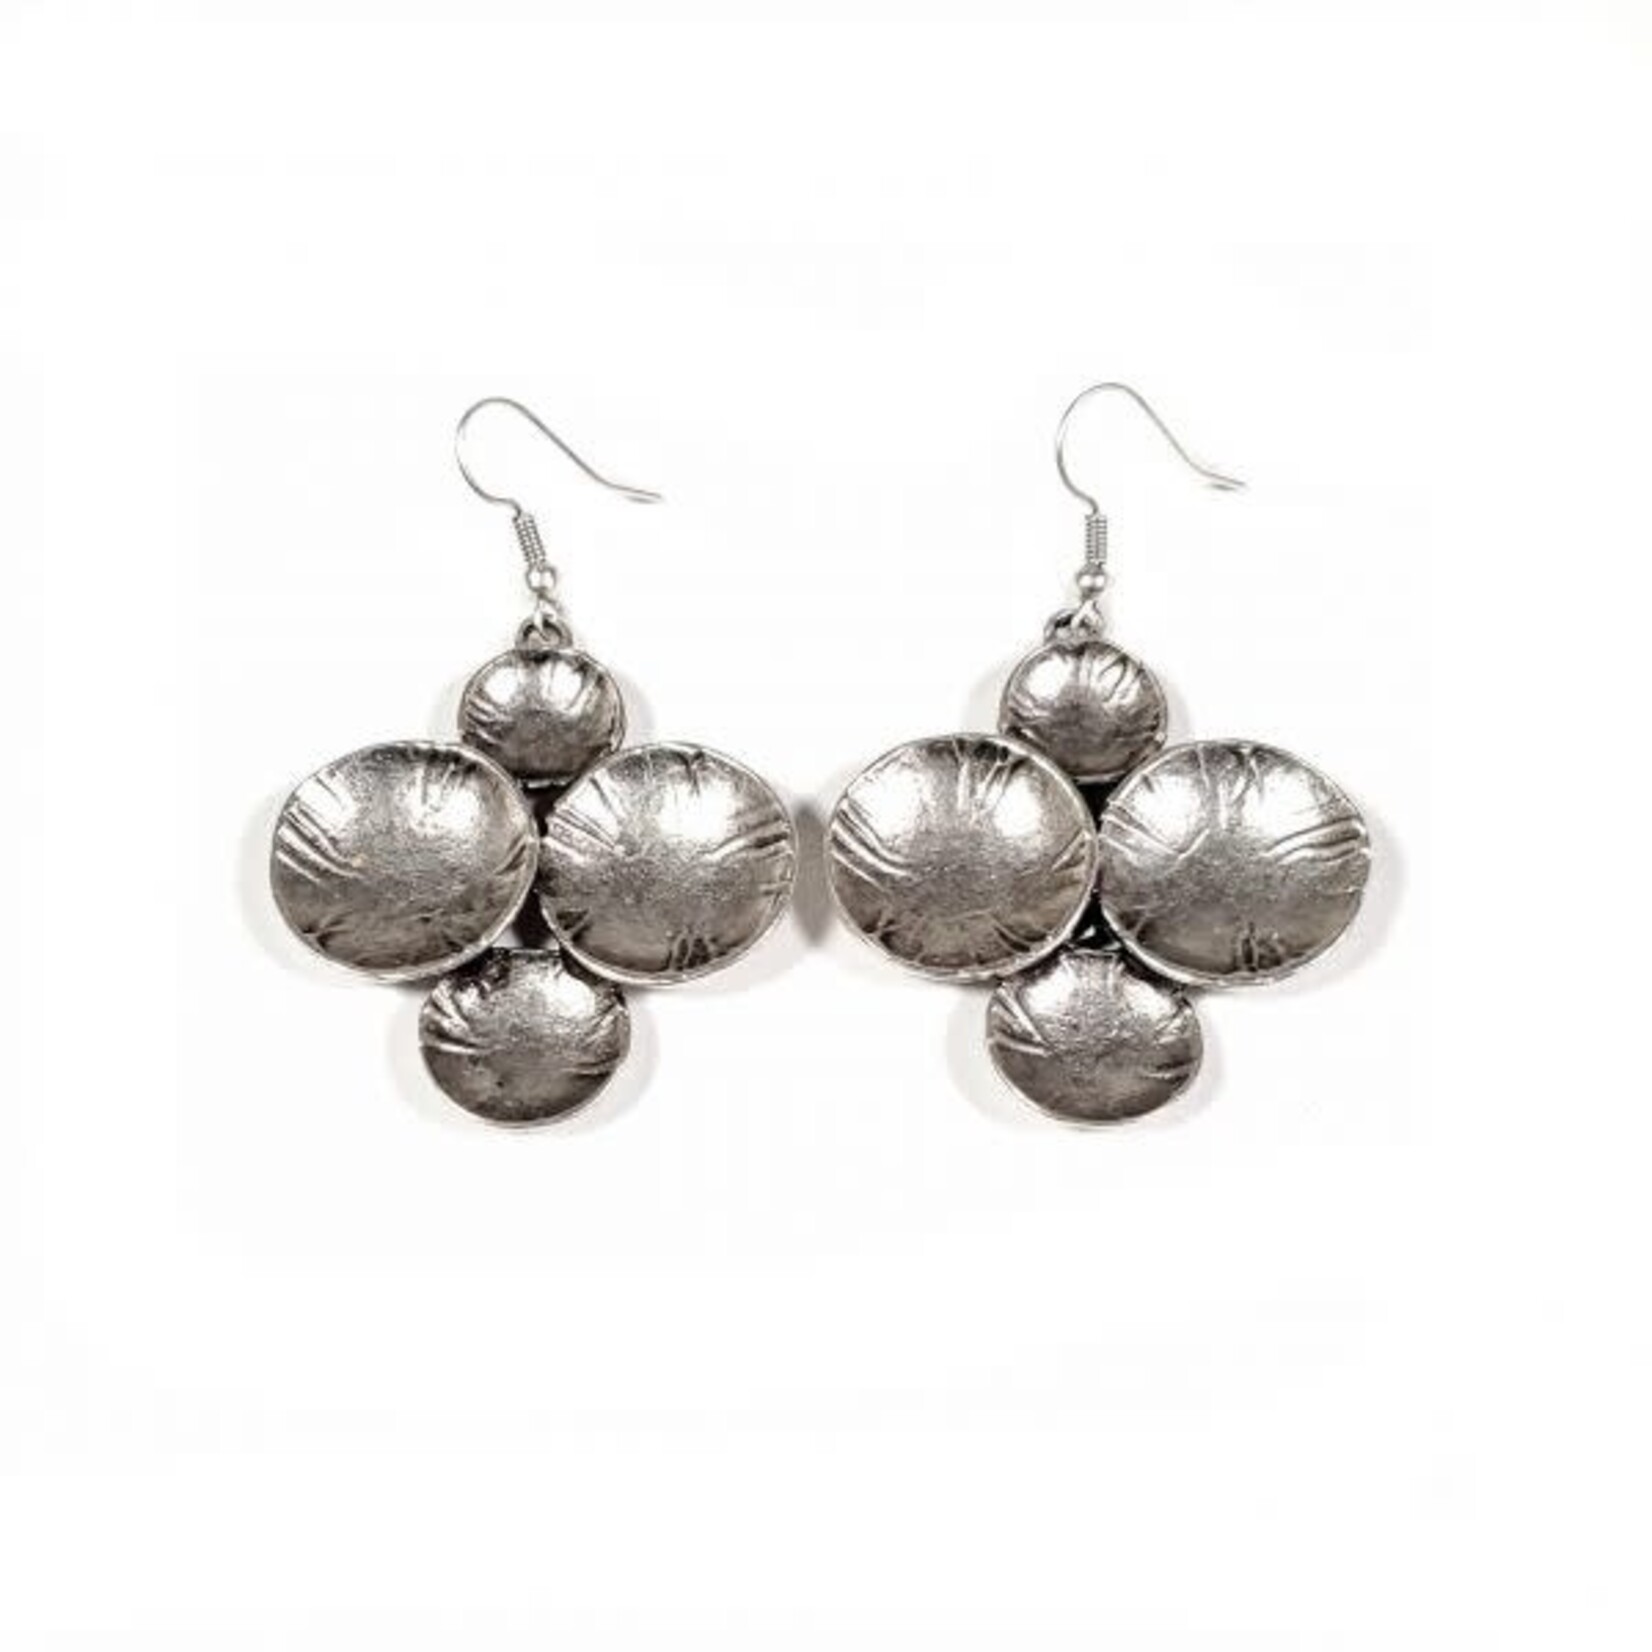 The Ancient Bazaar Welded Bubble Pewter Dangle Earrings